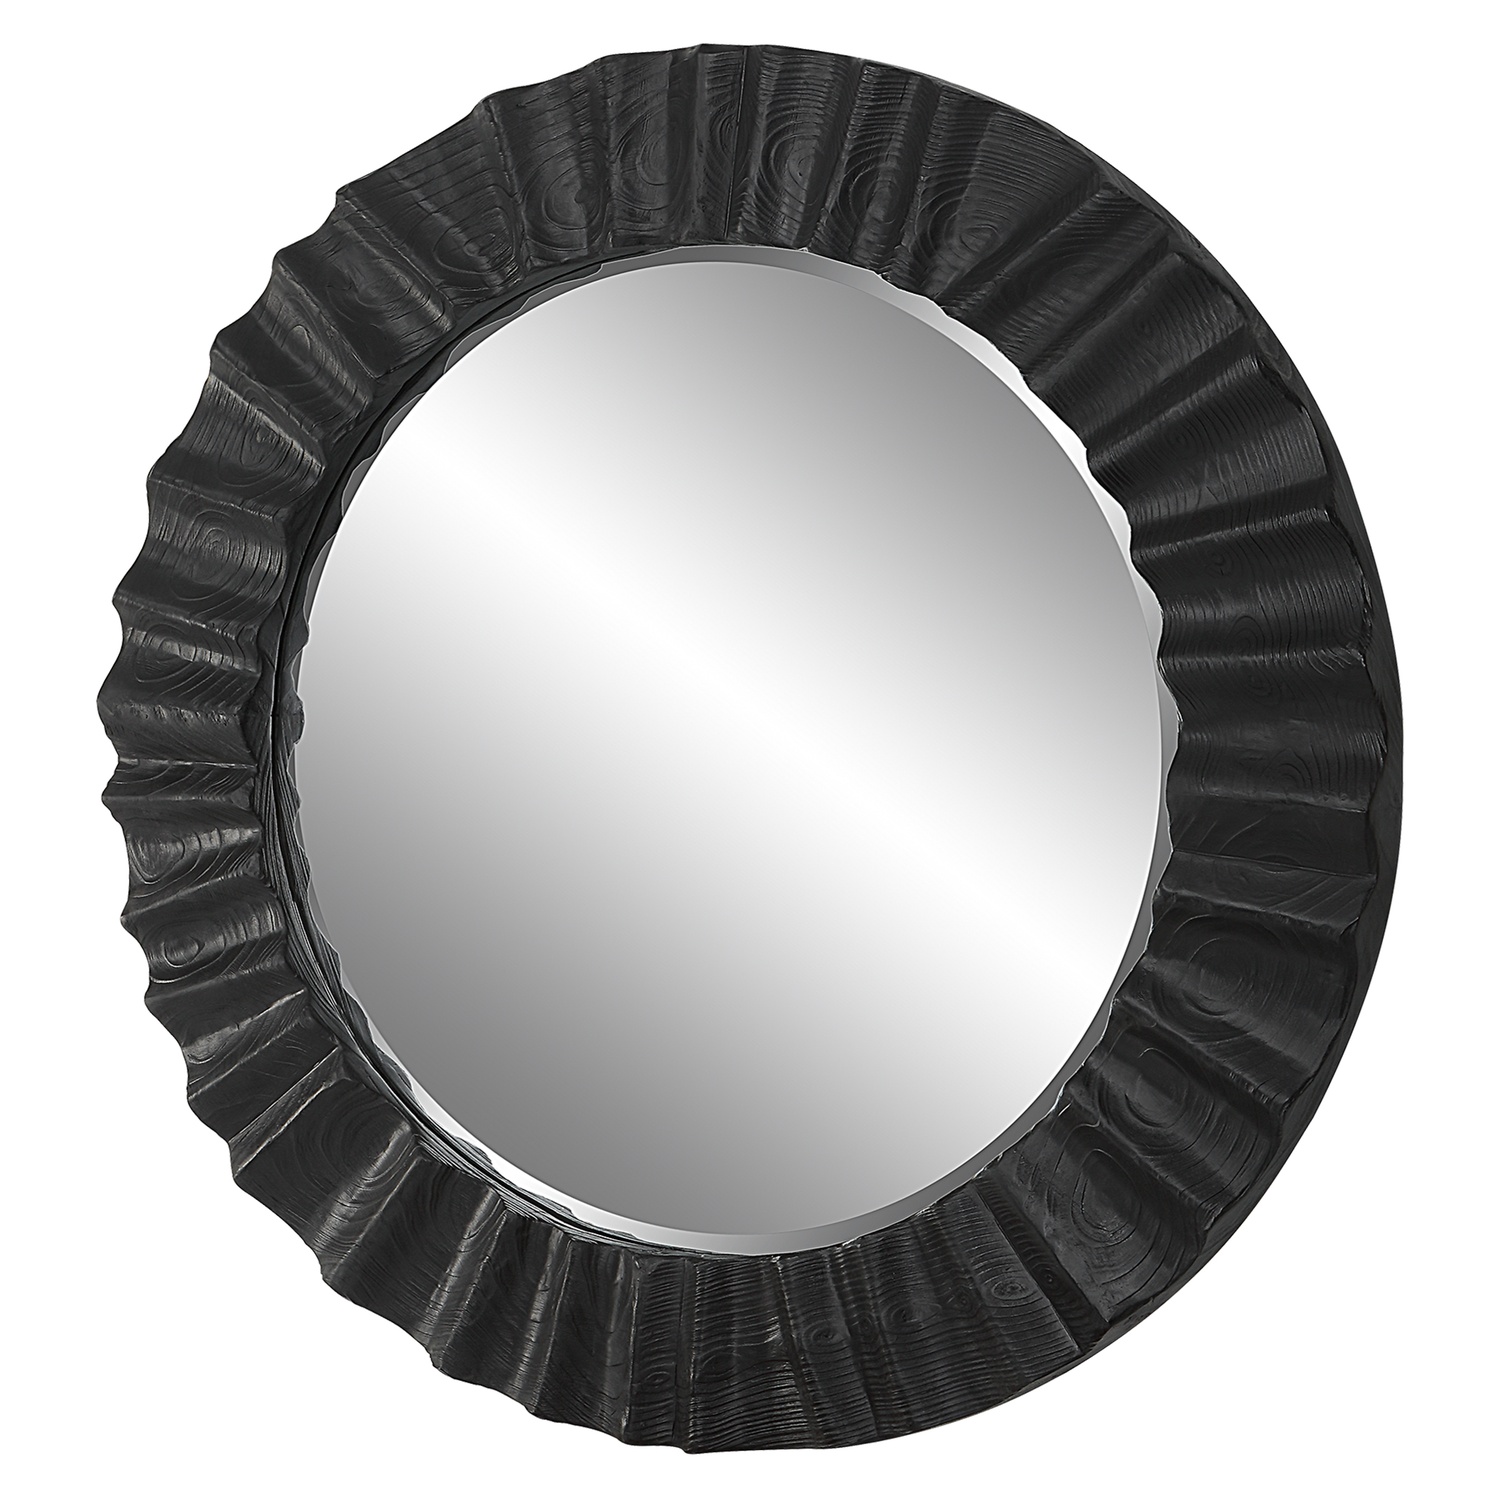 Caribou-Dark Espresso Round Mirror